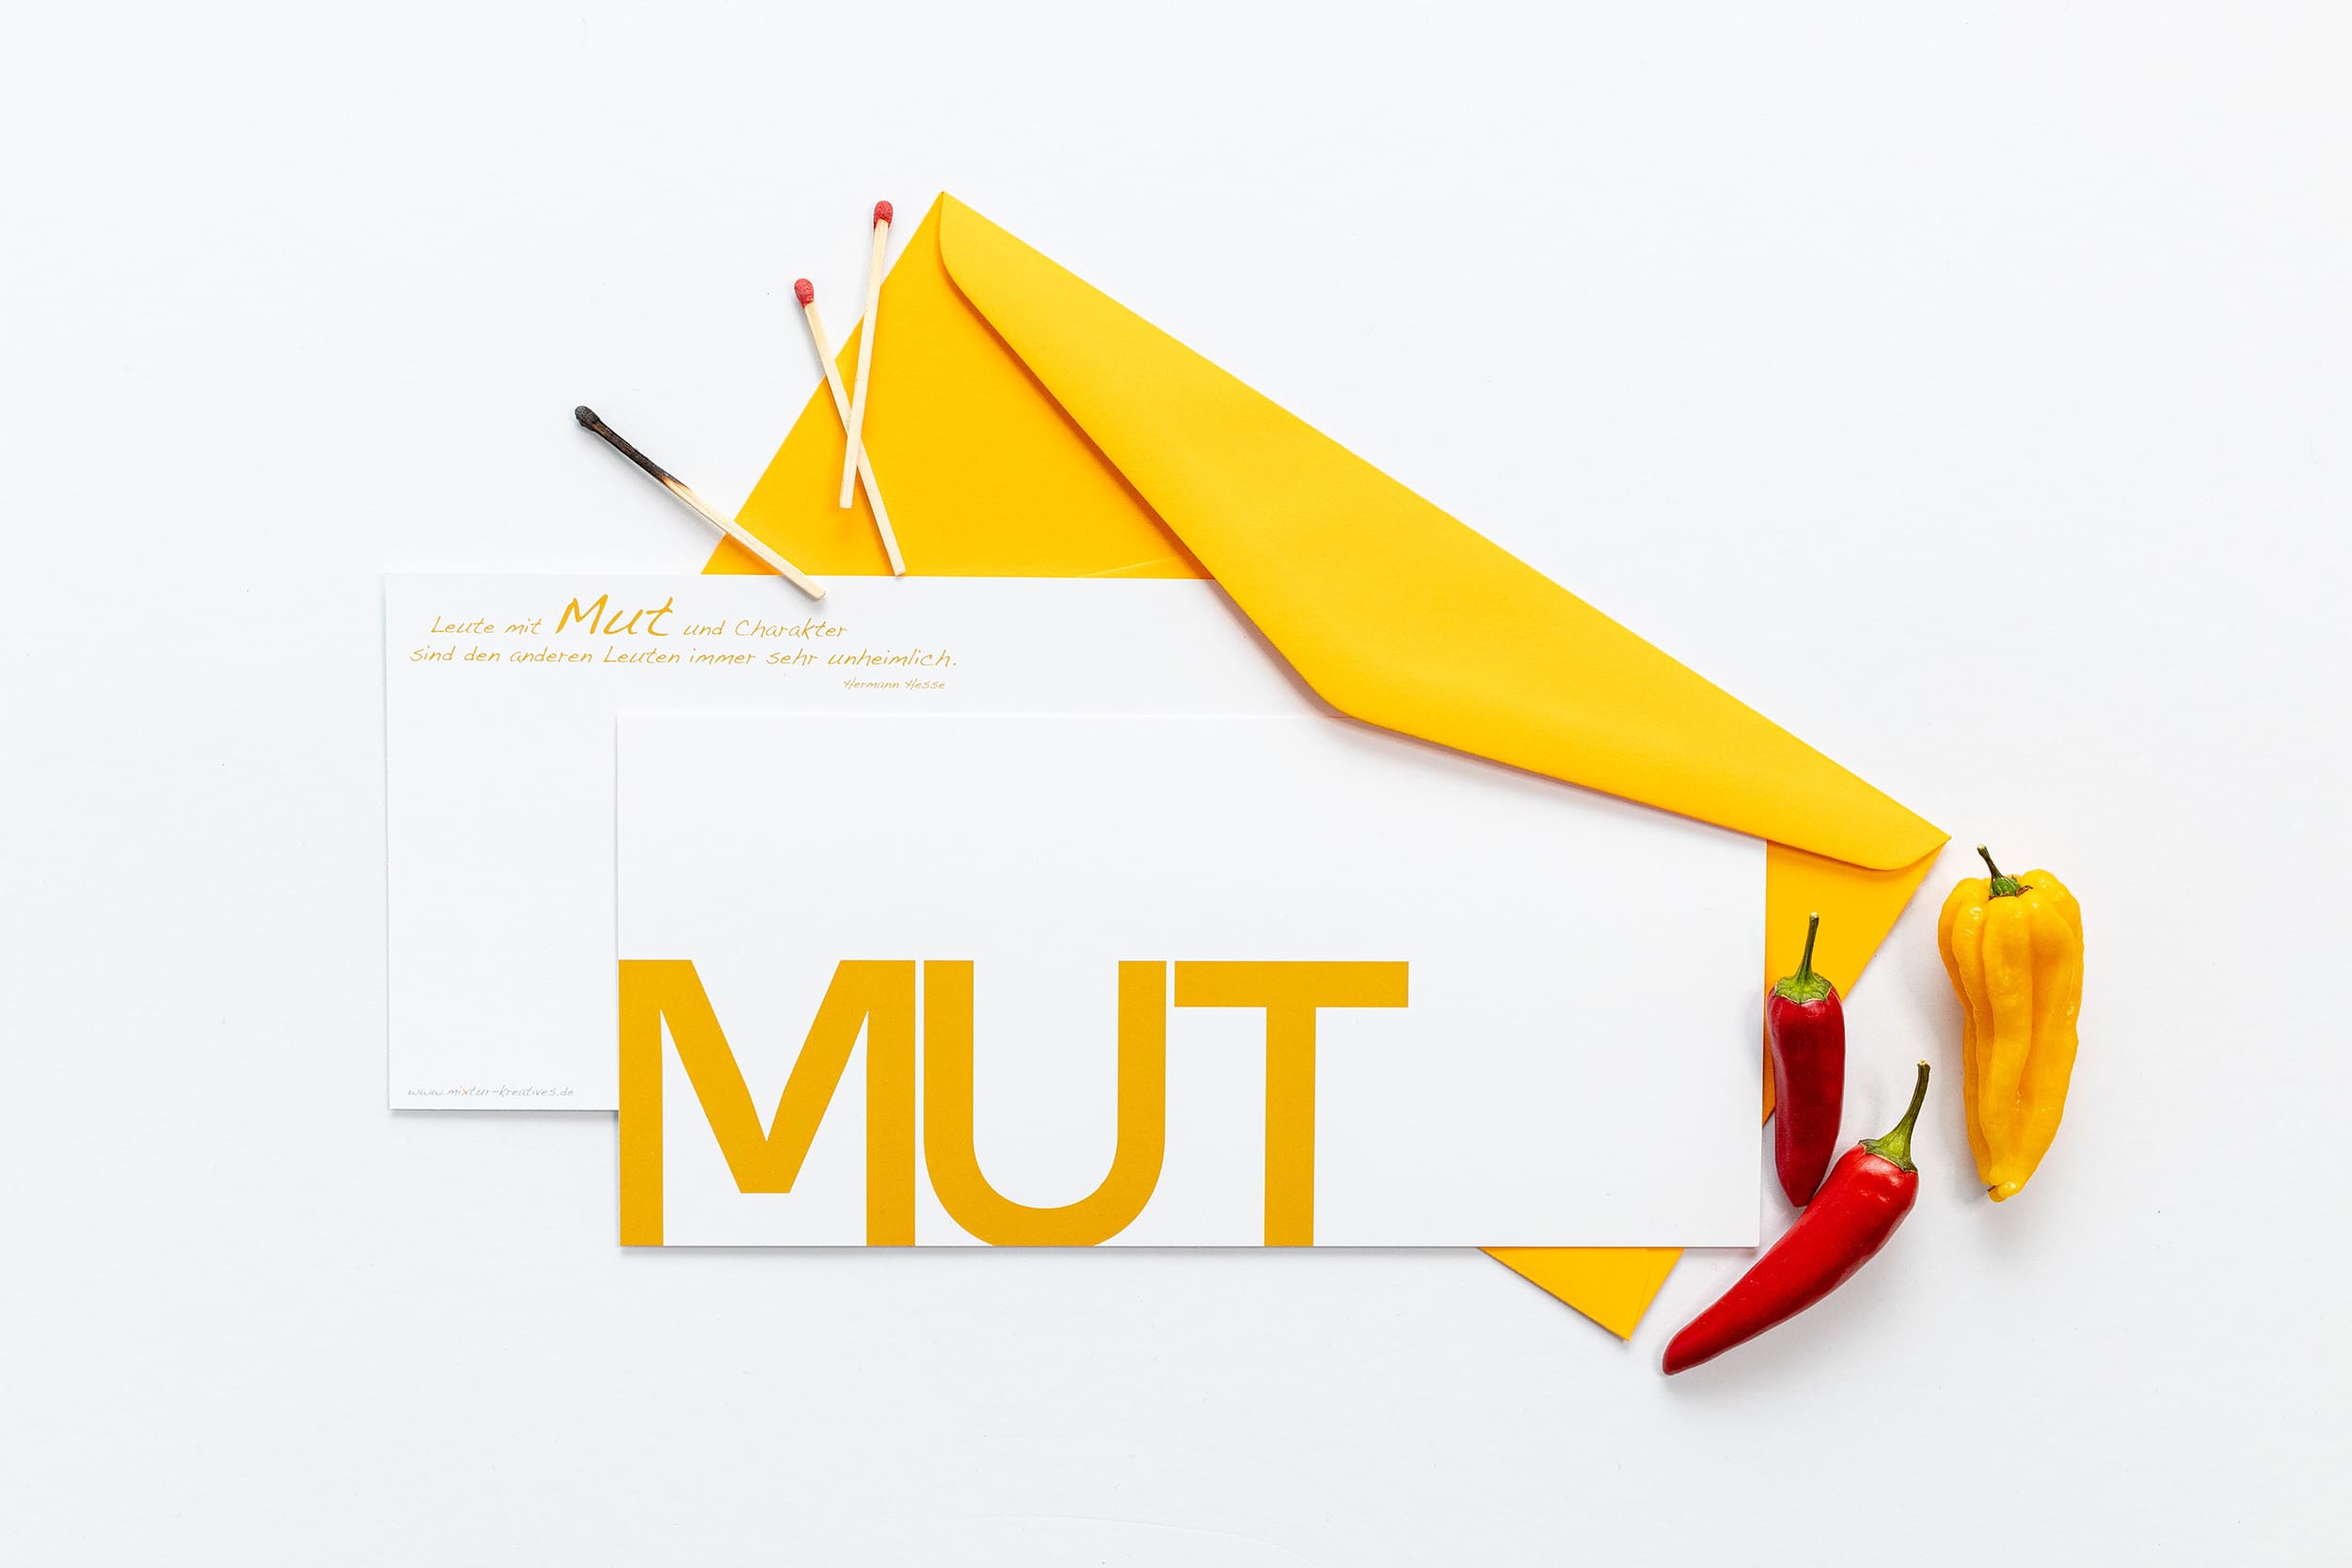 Grußkarte "MUT" mit passenden Accessoires: Streichhölzern und orangen Chillies